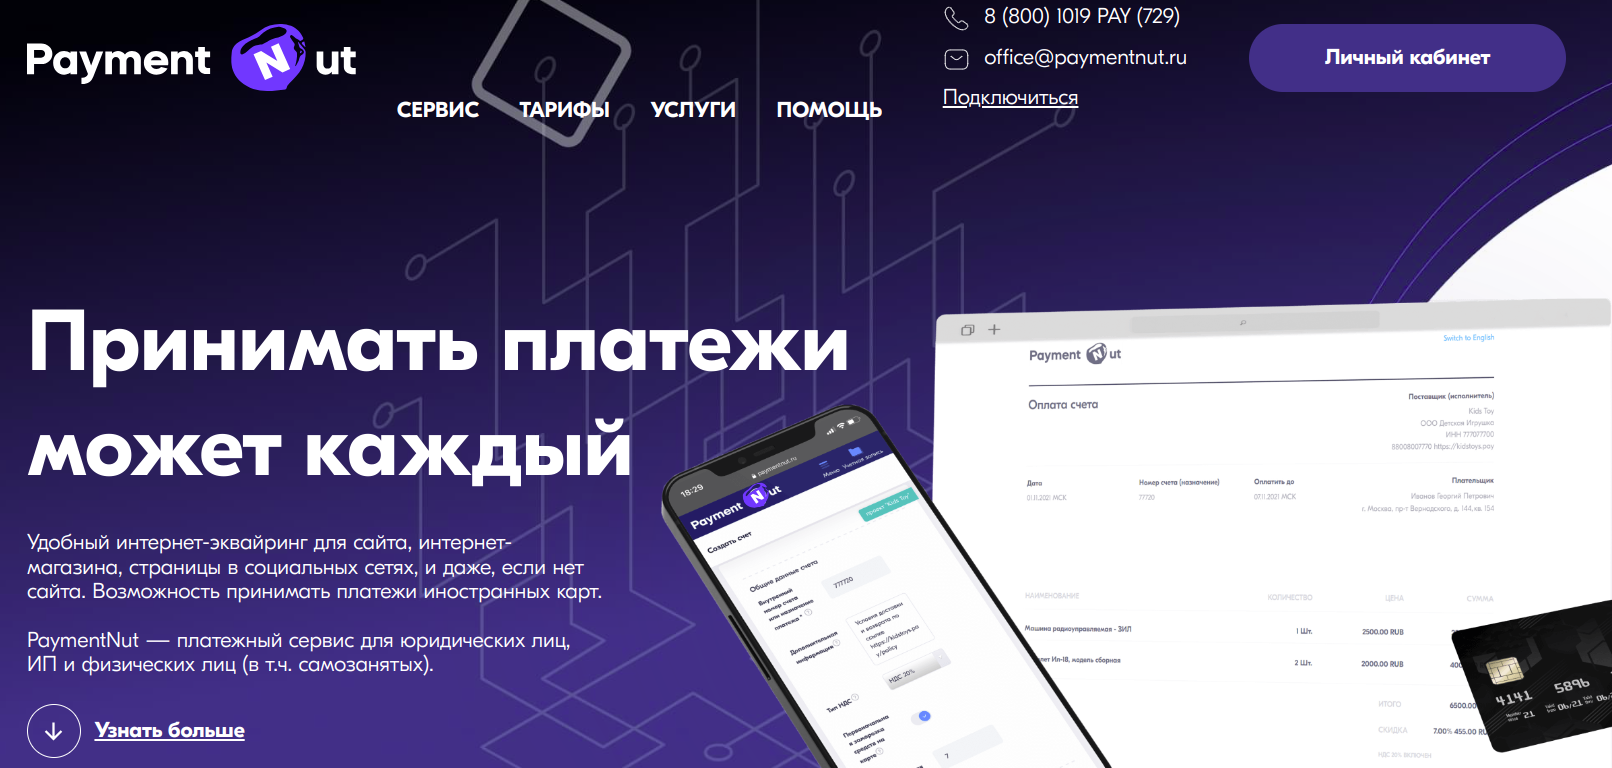 Обзор платежного сервиса paymentnut.ru: комиссии и отзывы пользователей